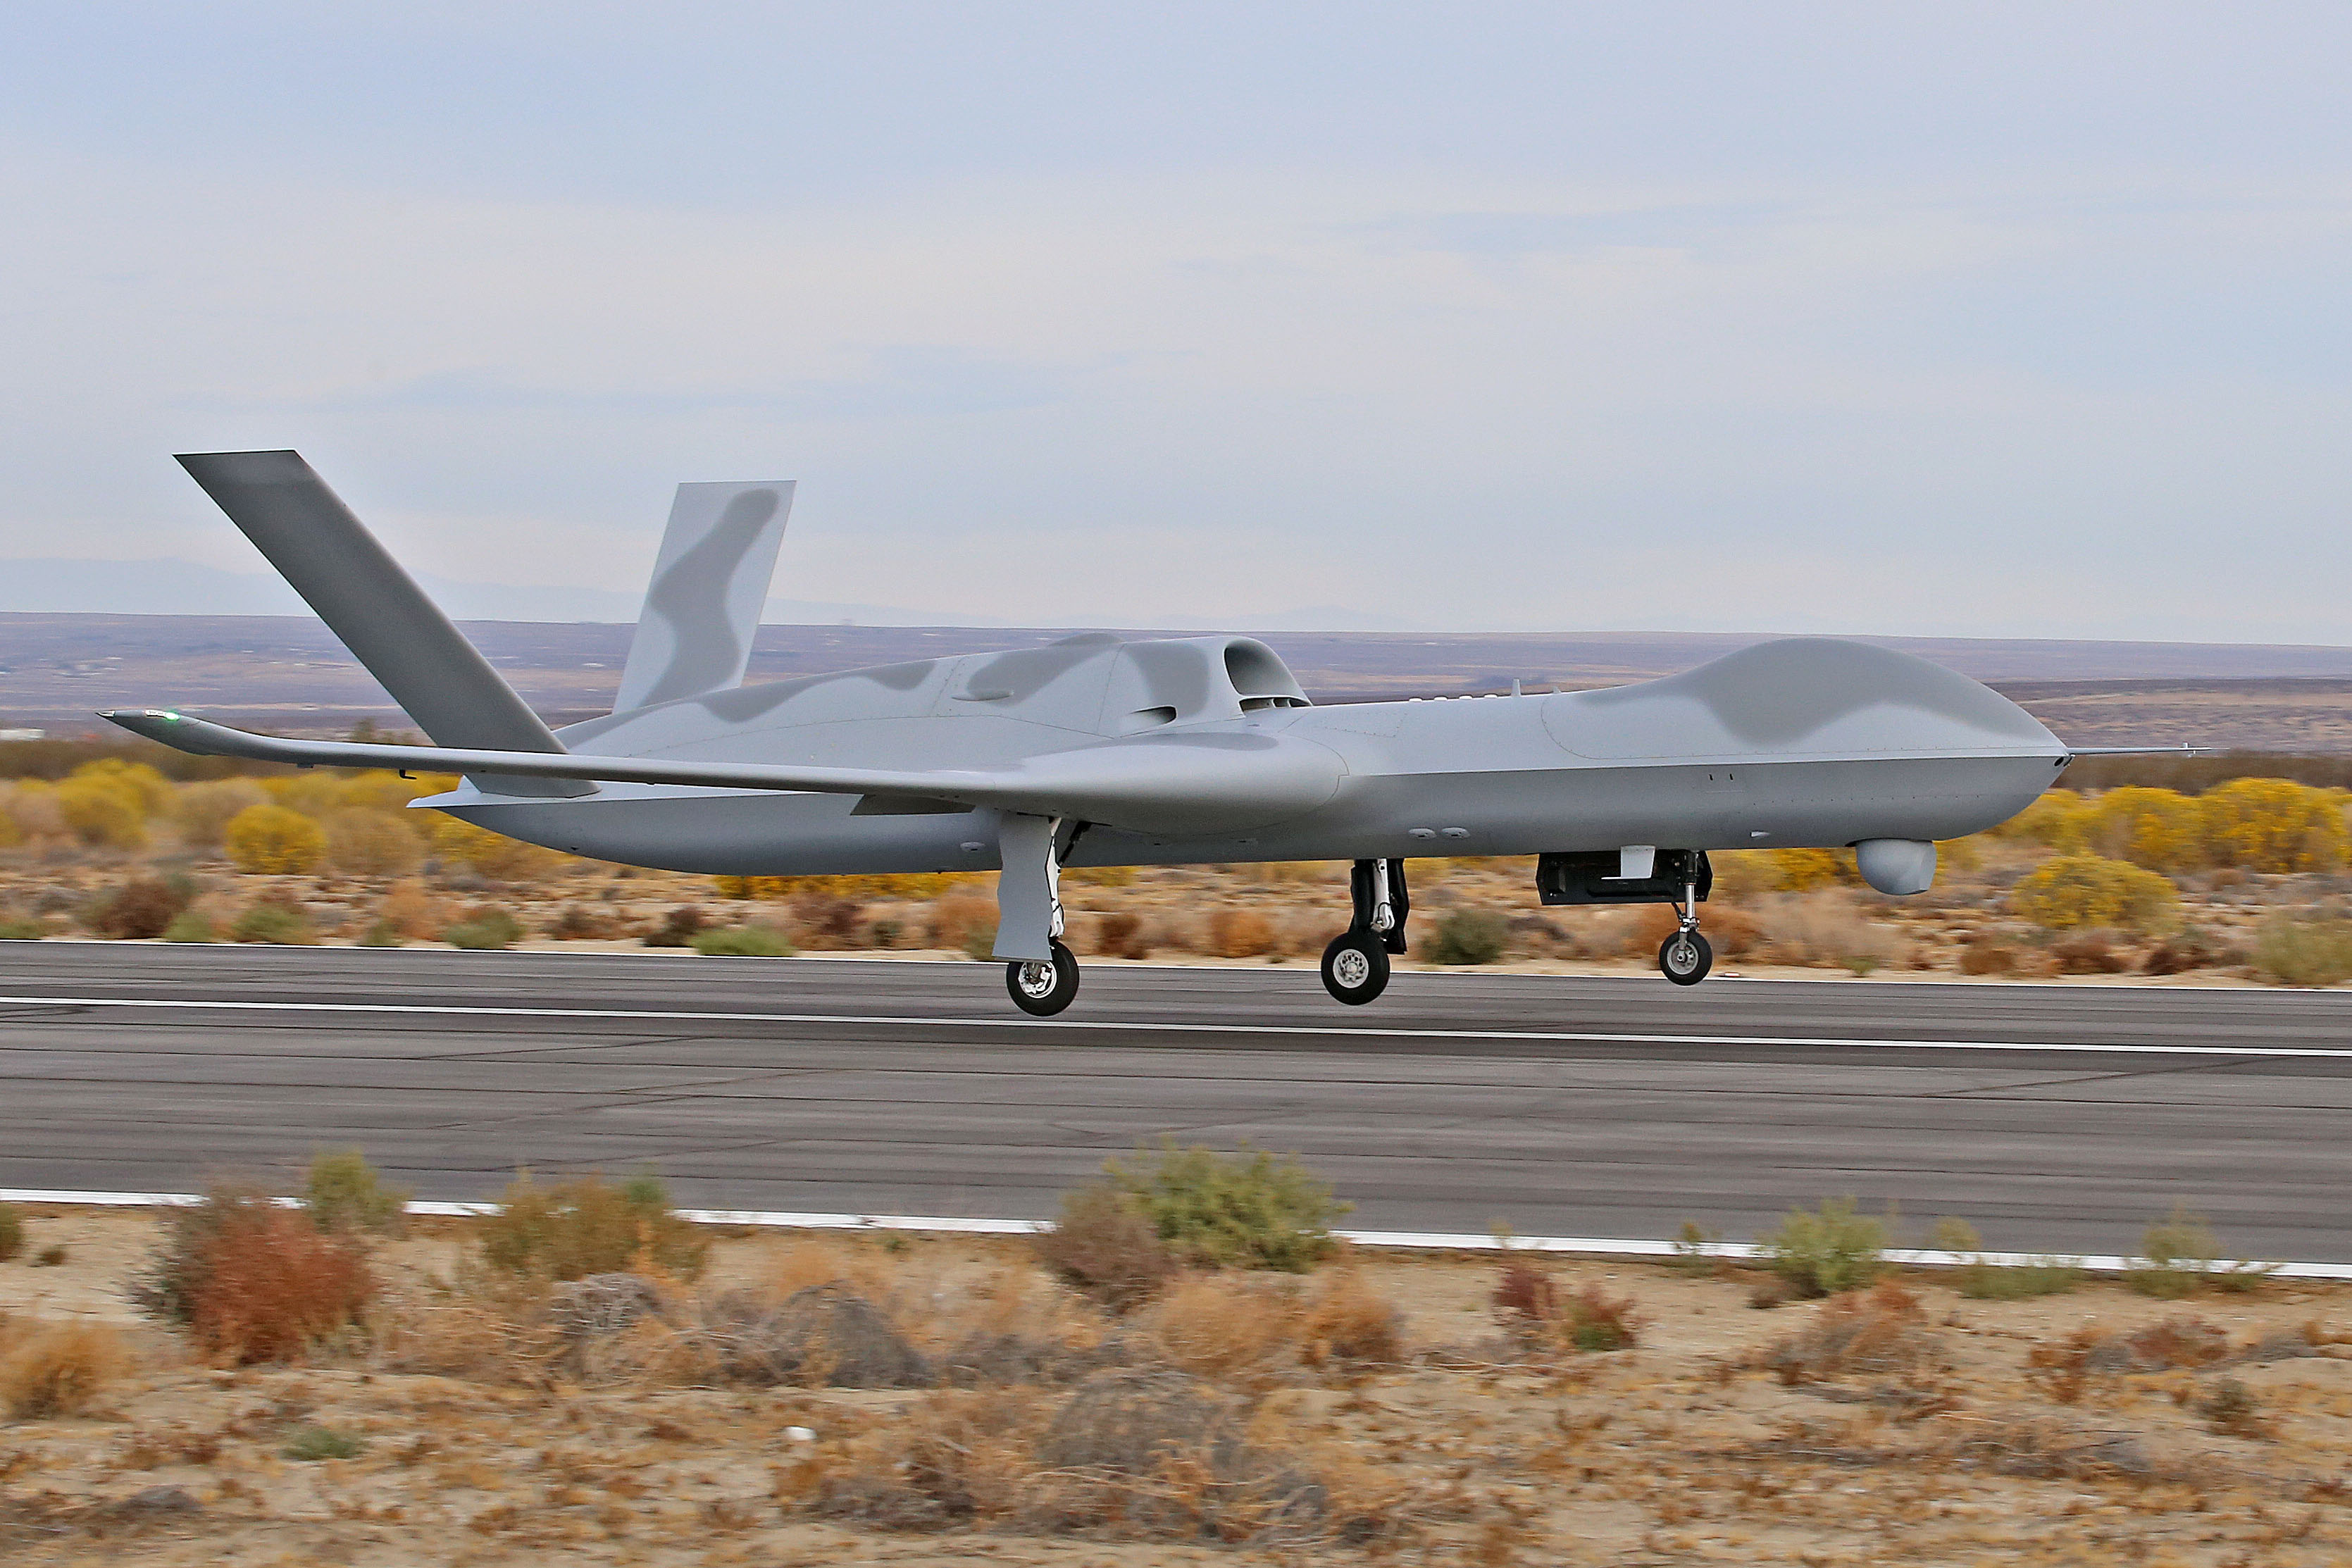 udstilling lineær obligat General Atomics targets first big international Avenger drone sale